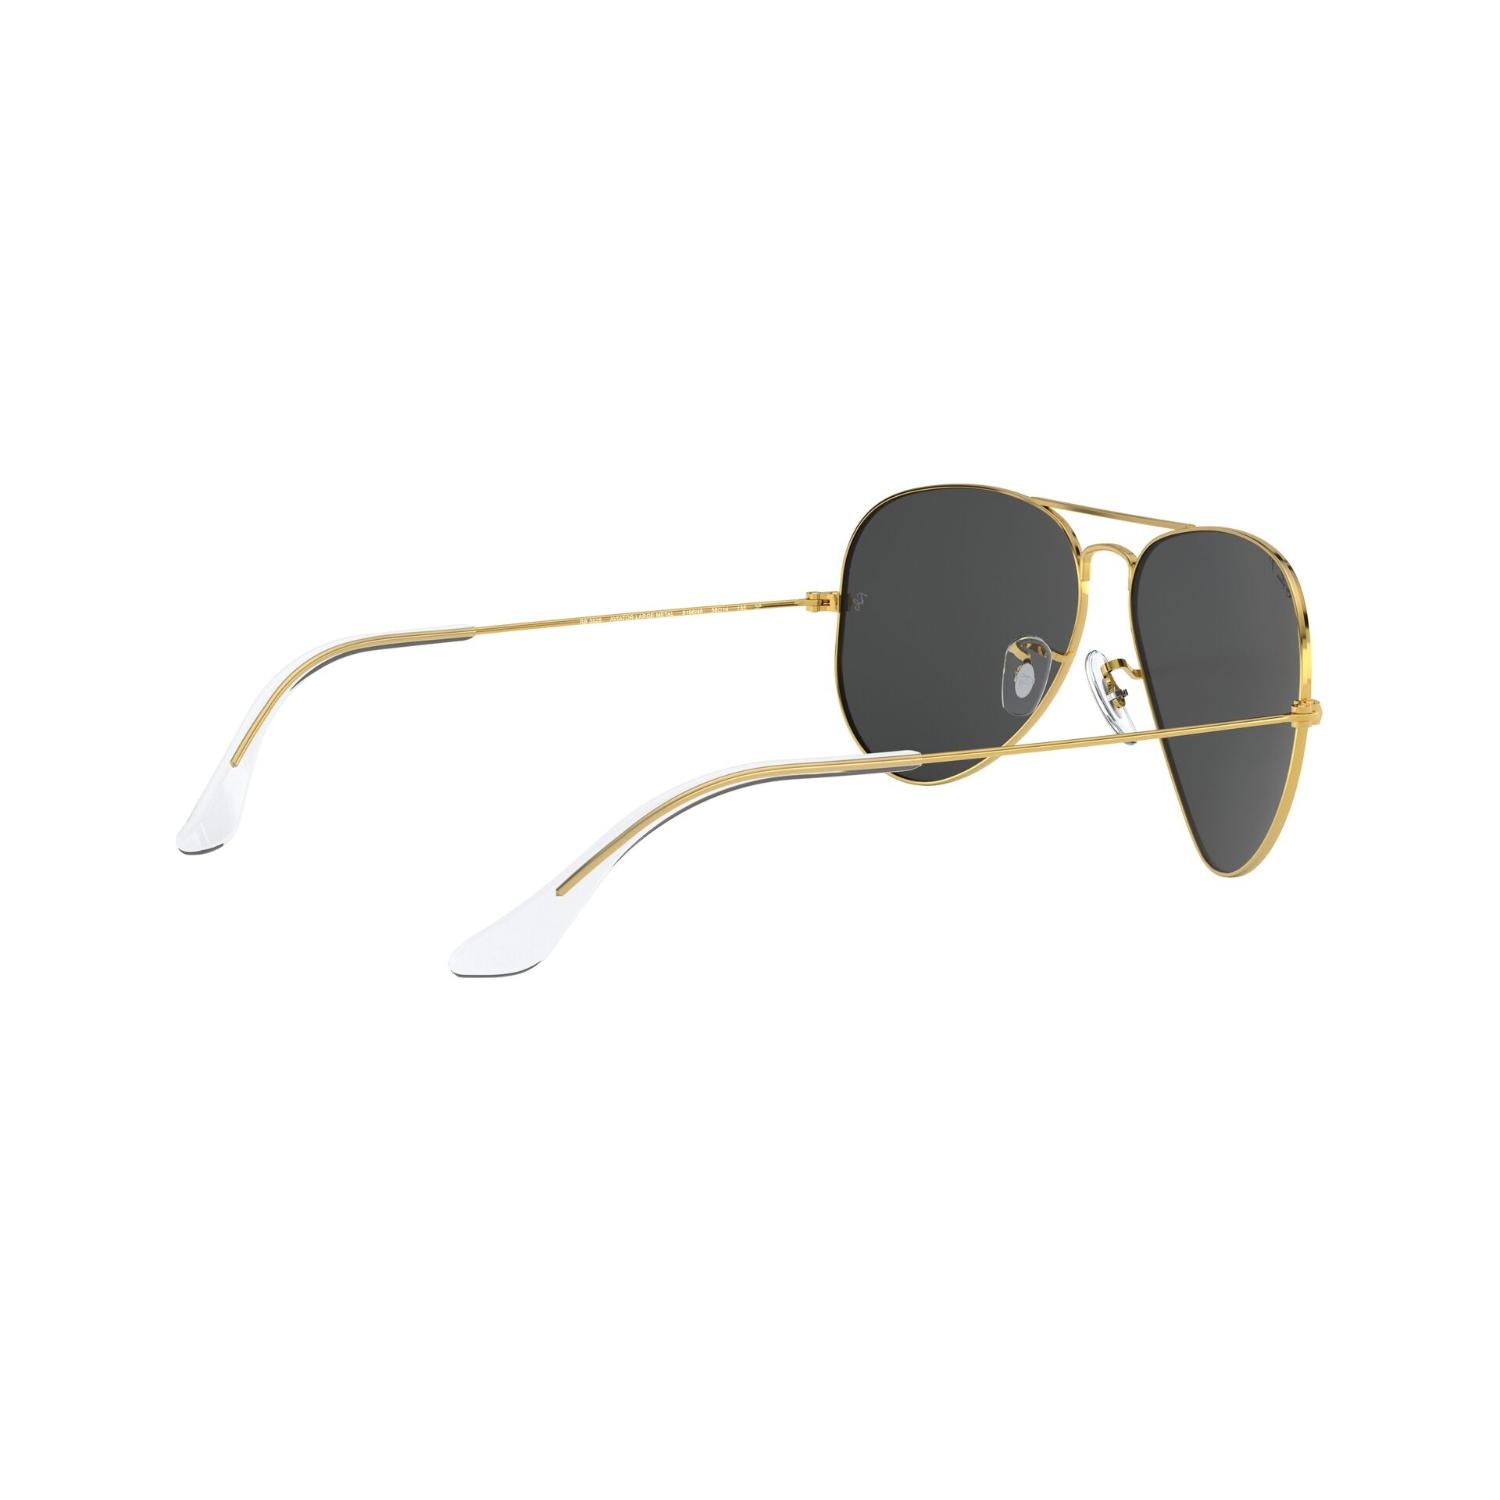 Ray-Ban Gafas de sol aviador originales para hombre (RB3025) Metal, dorado,  talla M, Oro